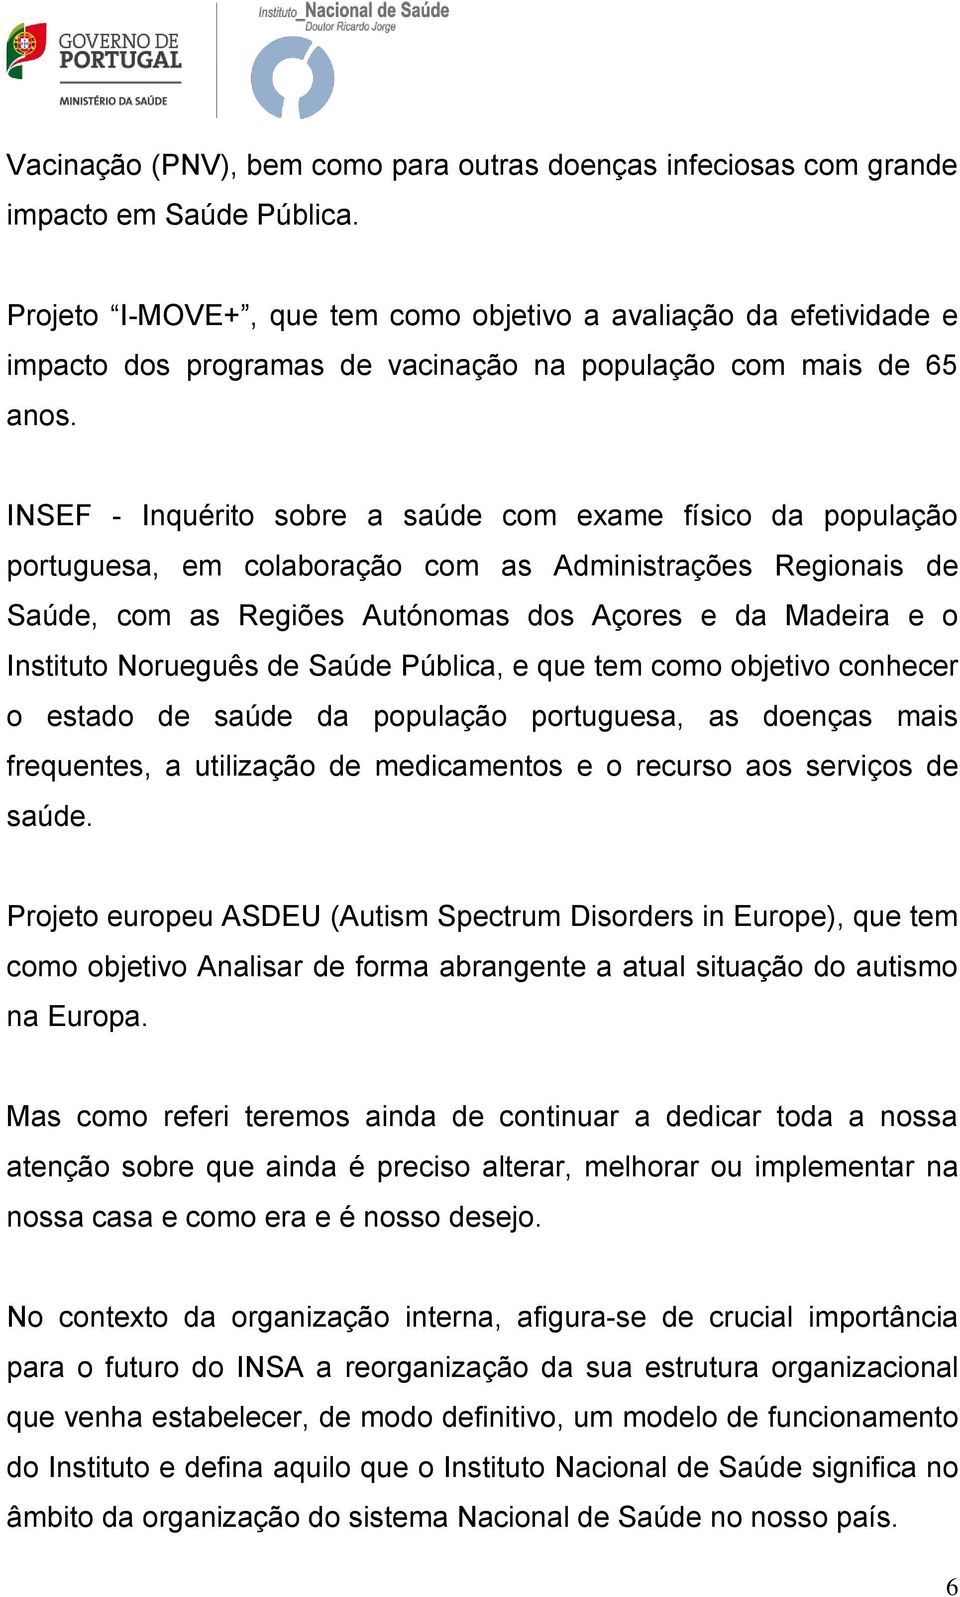 INSEF - Inquérito sobre a saúde com exame físico da população portuguesa, em colaboração com as Administrações Regionais de Saúde, com as Regiões Autónomas dos Açores e da Madeira e o Instituto